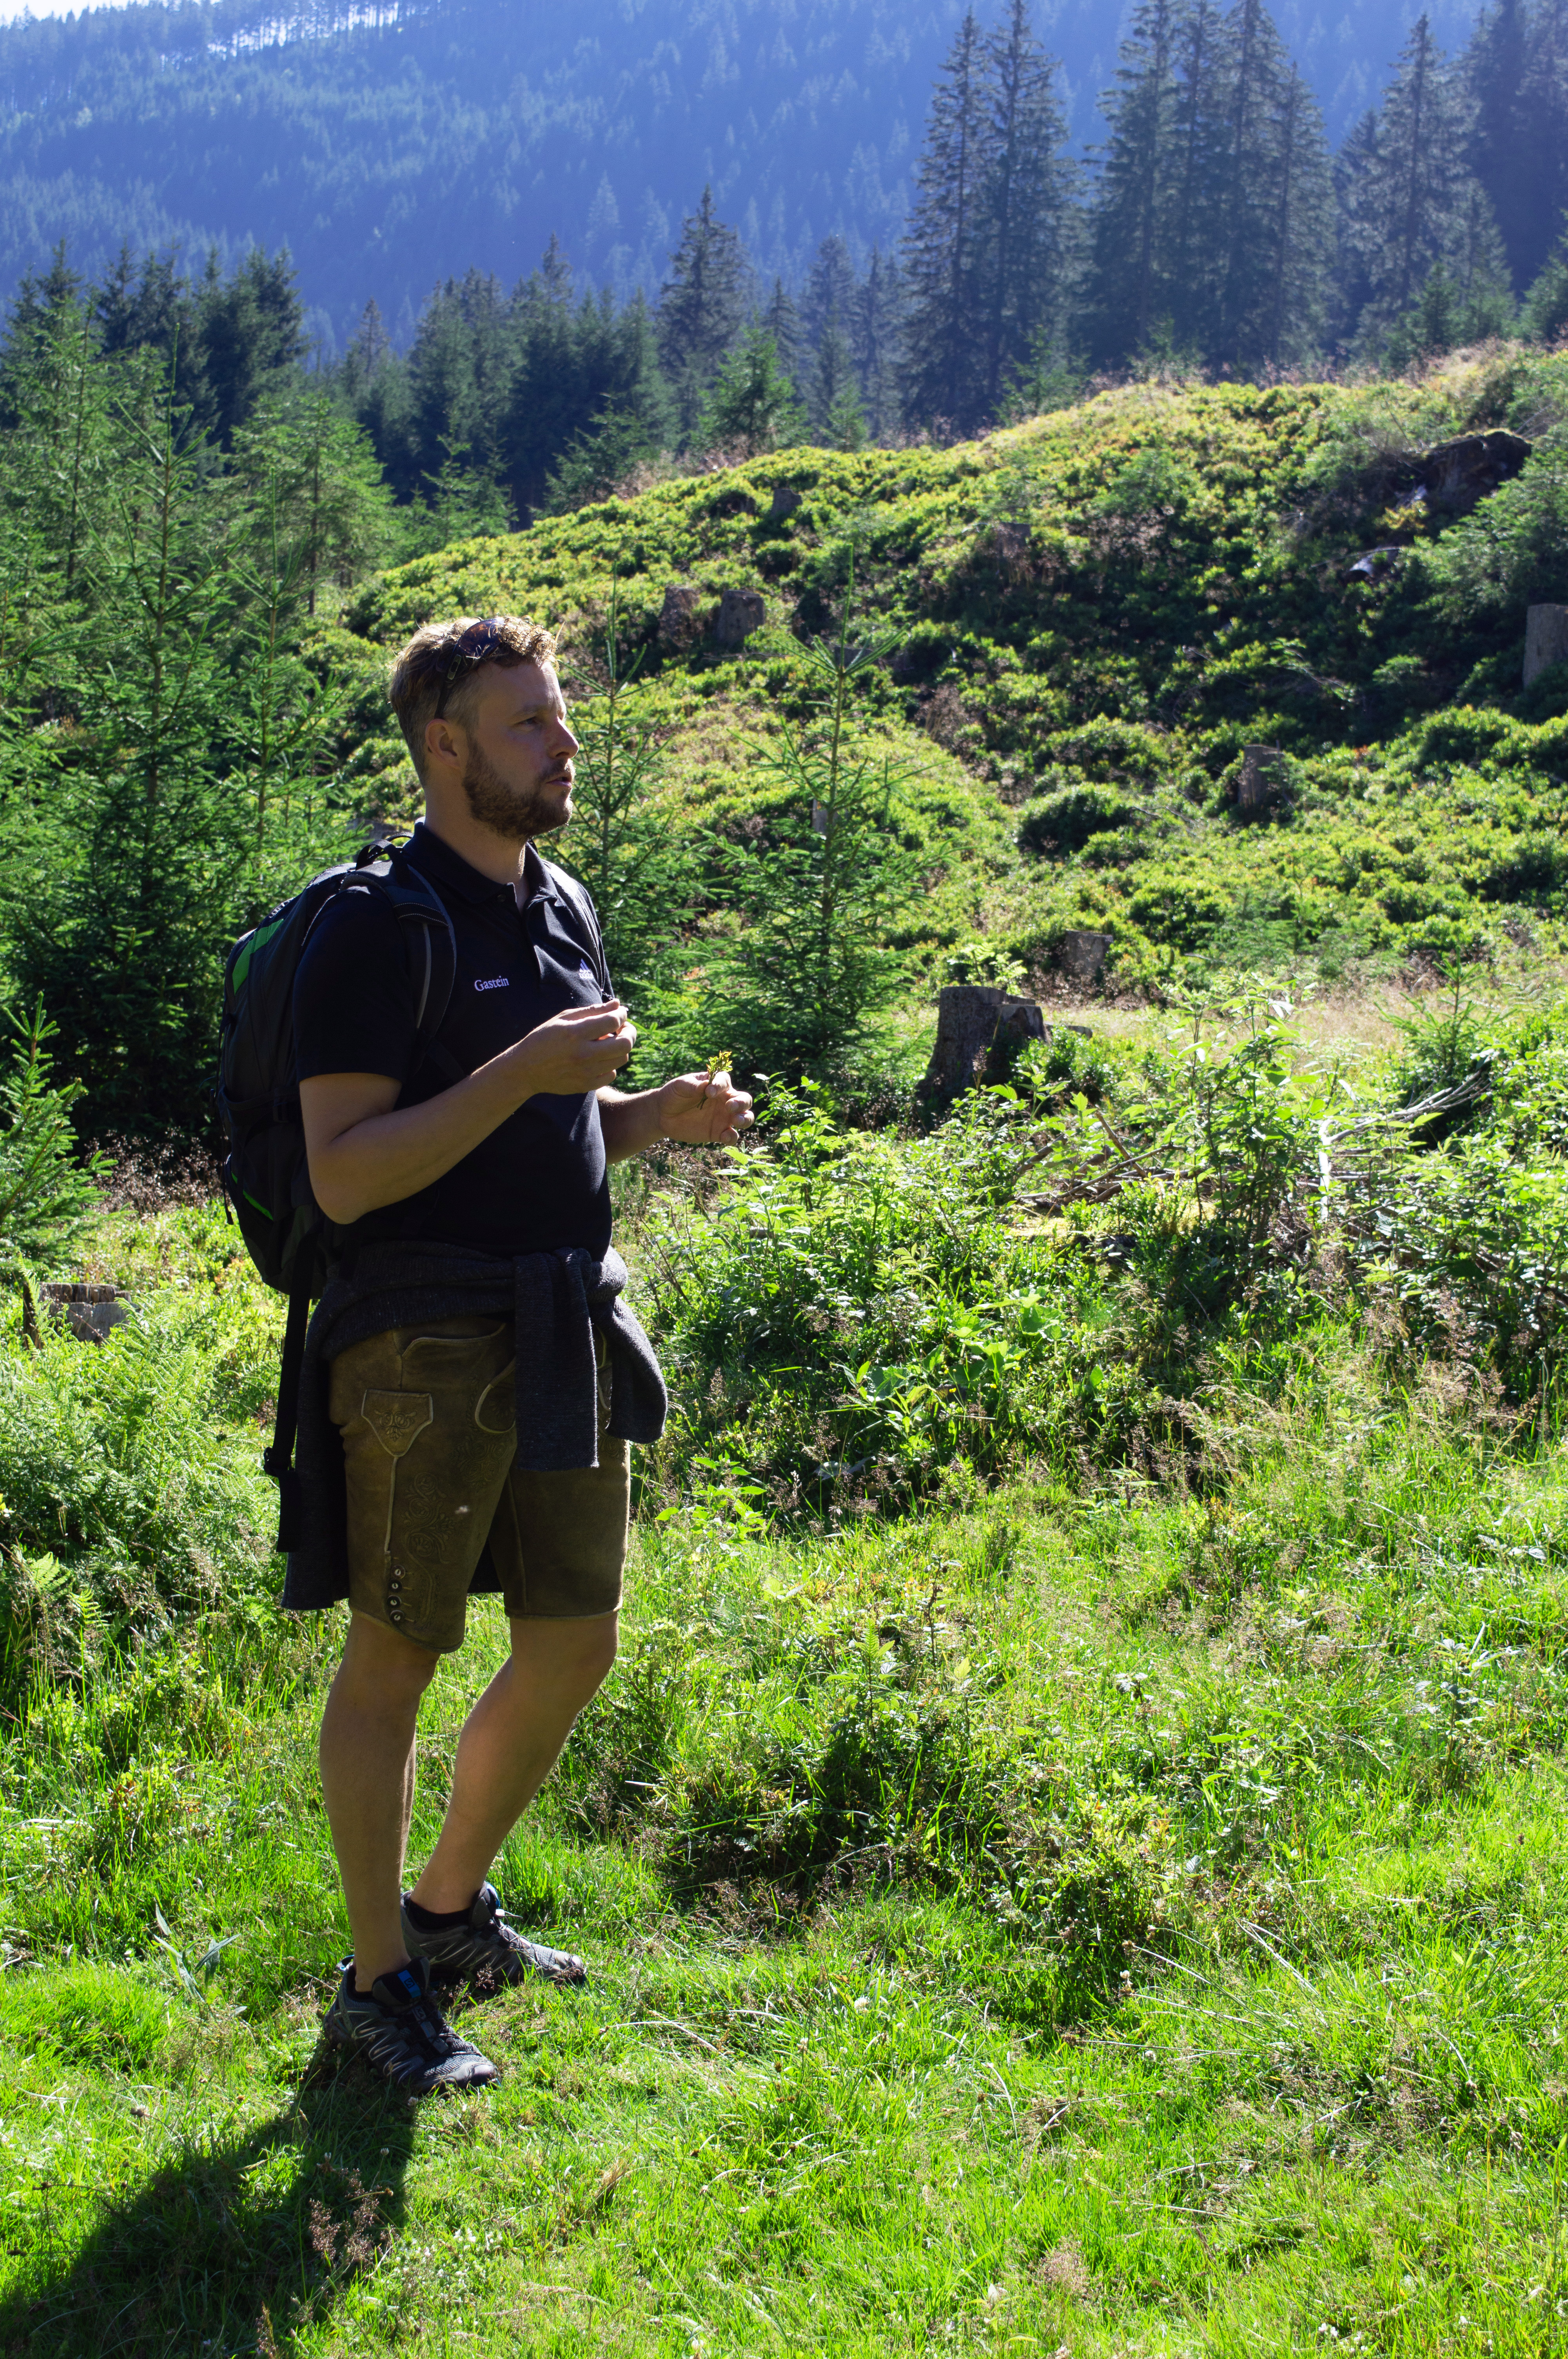 Stefan erklärt Flora & Fauna während der Wanderung